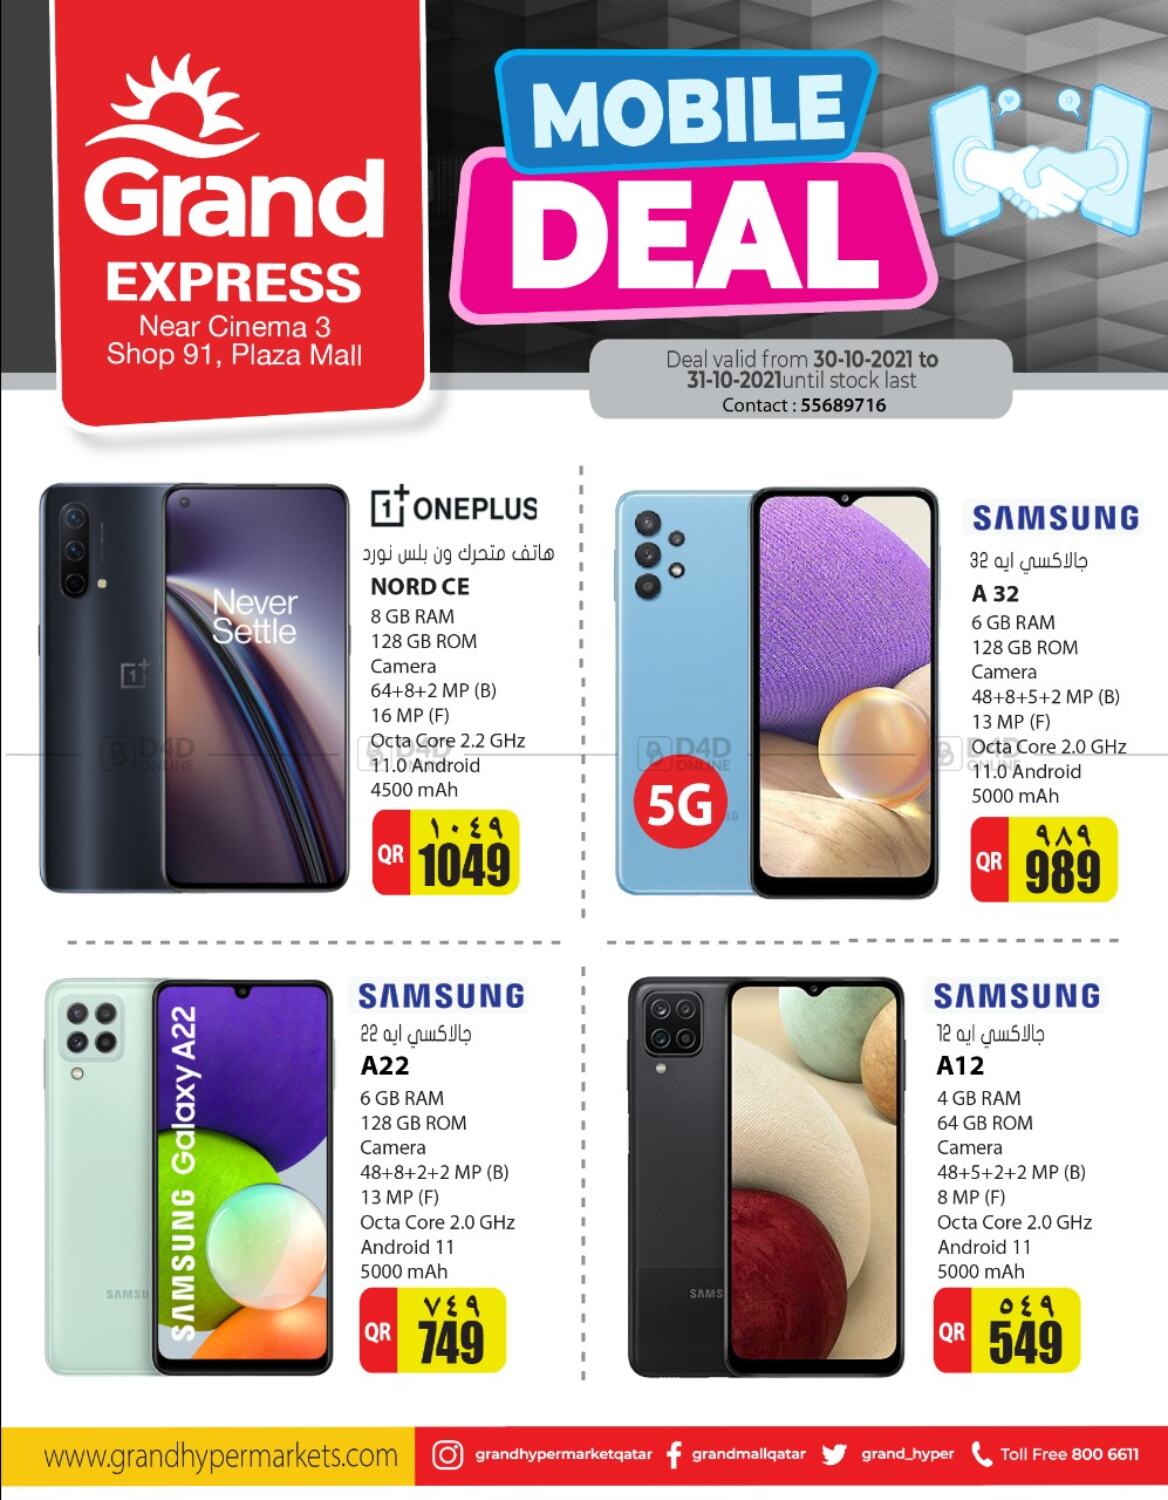 Grand Hypermarket Mobile Deal In Qatar Al Wakra Till 31st October